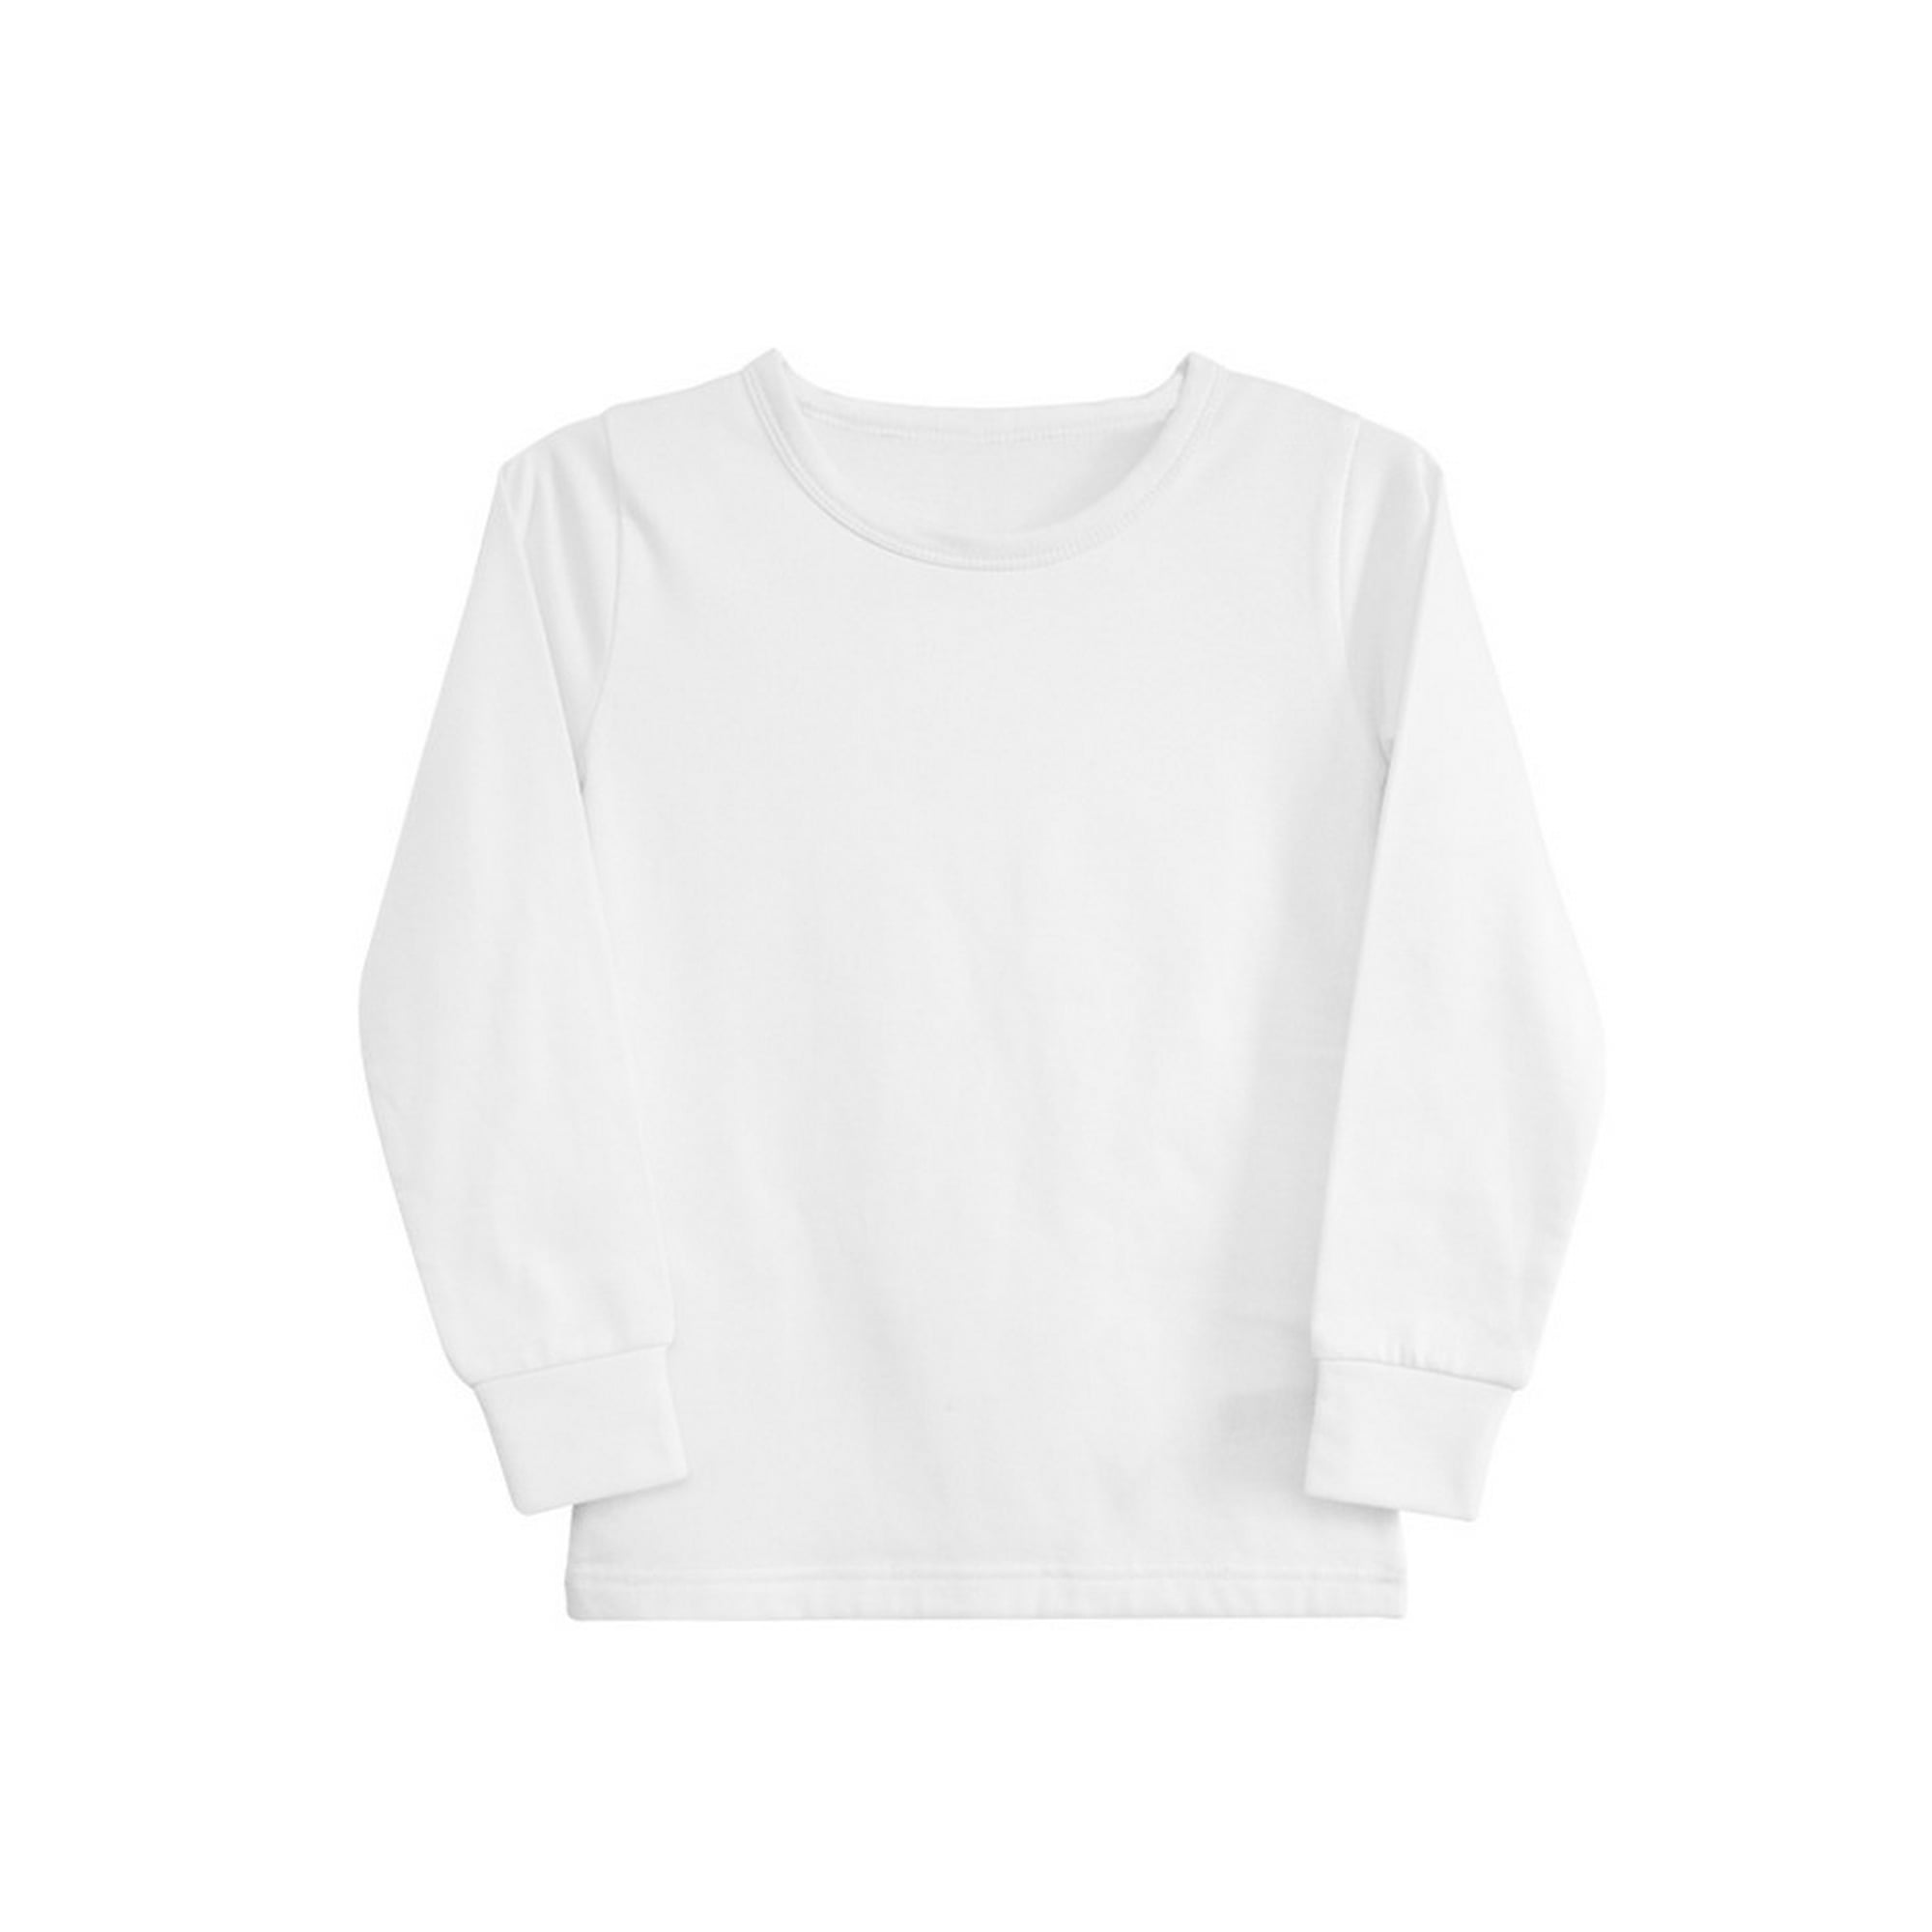  Camisetas Termicas - Ropa De Niña / Moda Niña: Moda